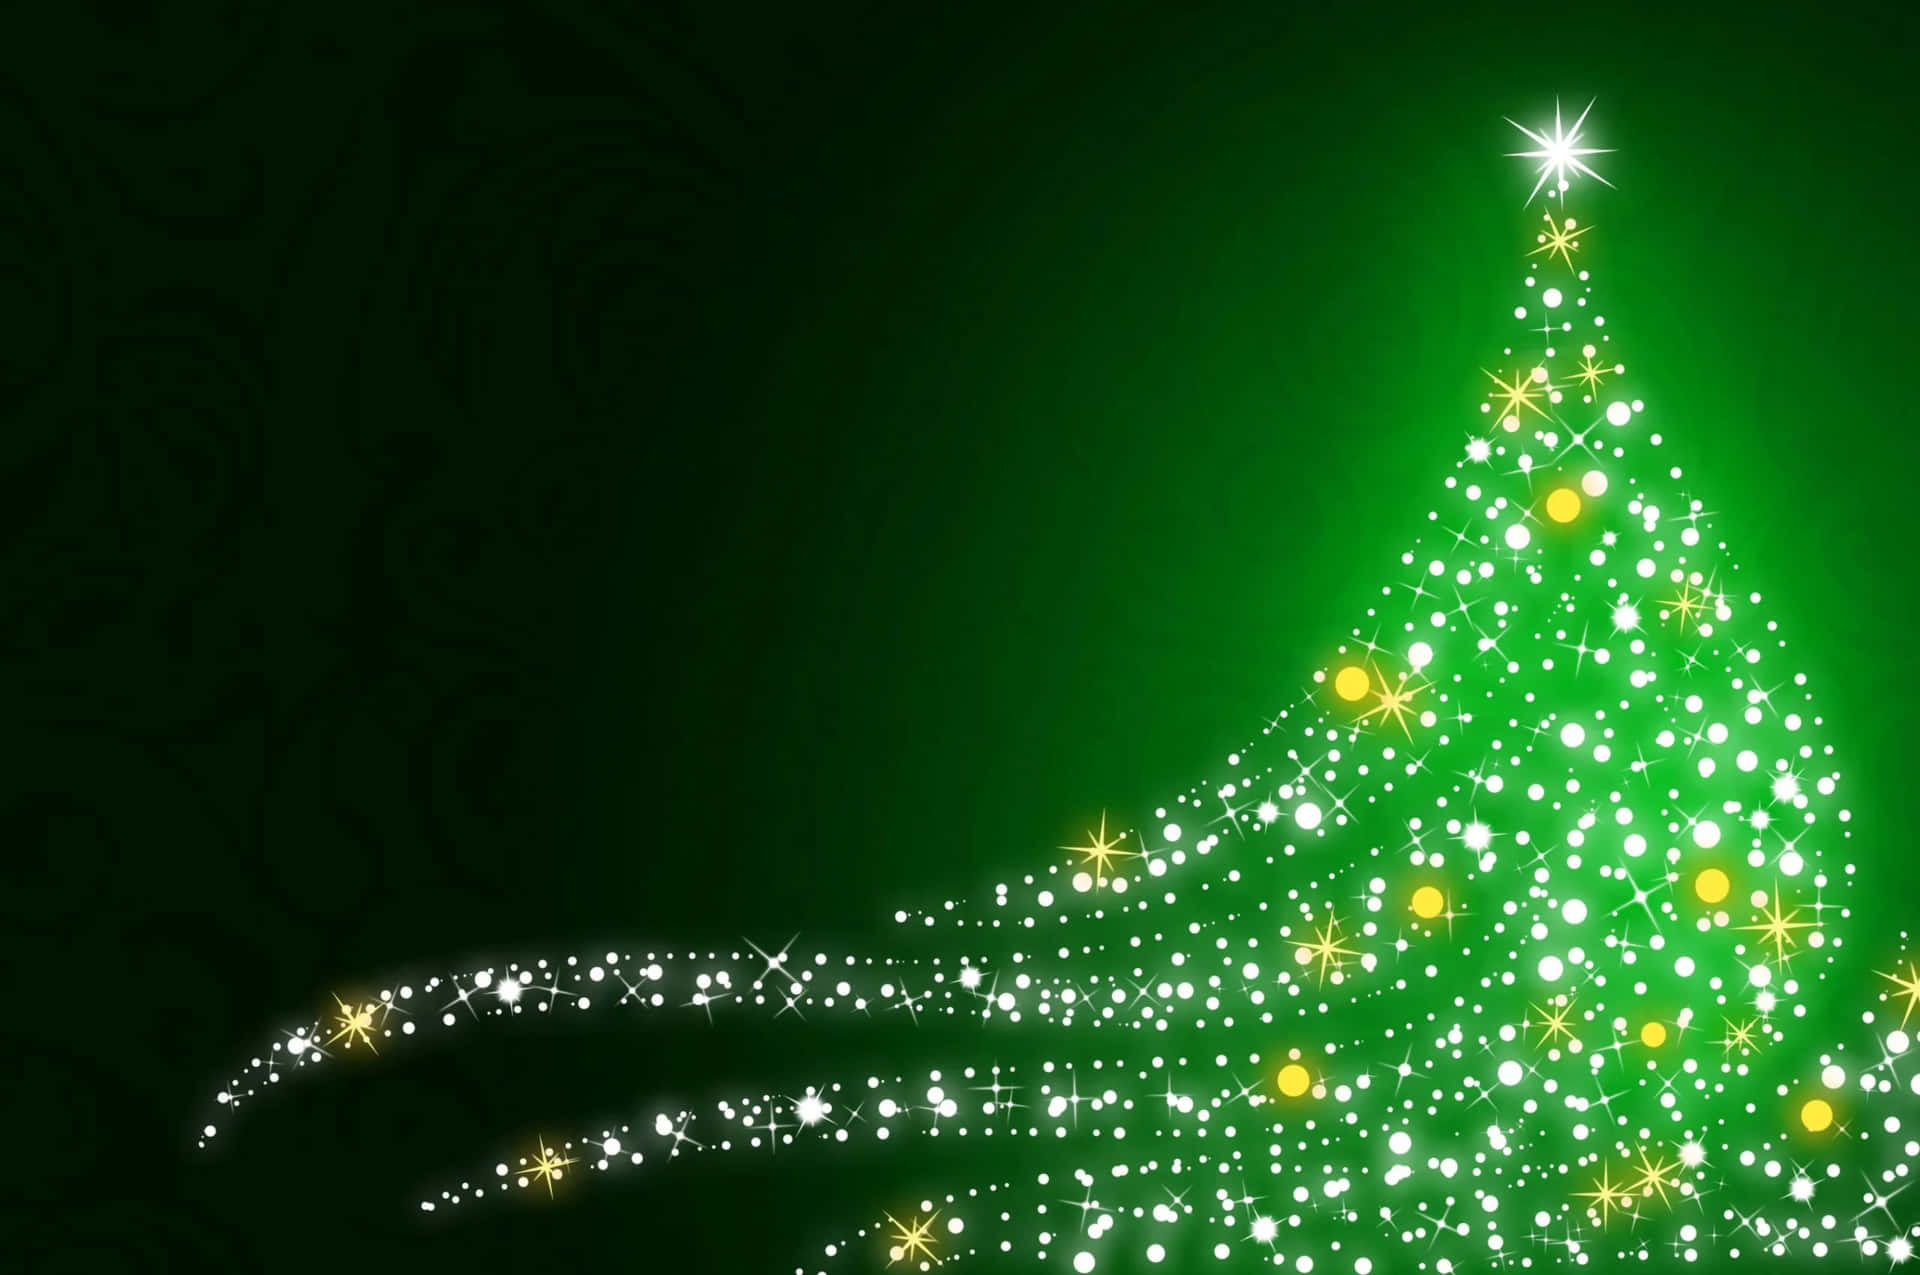 Rendila Tua Stagione Delle Vacanze Allegre E Luminose Con Natale Verde Scuro. Sfondo